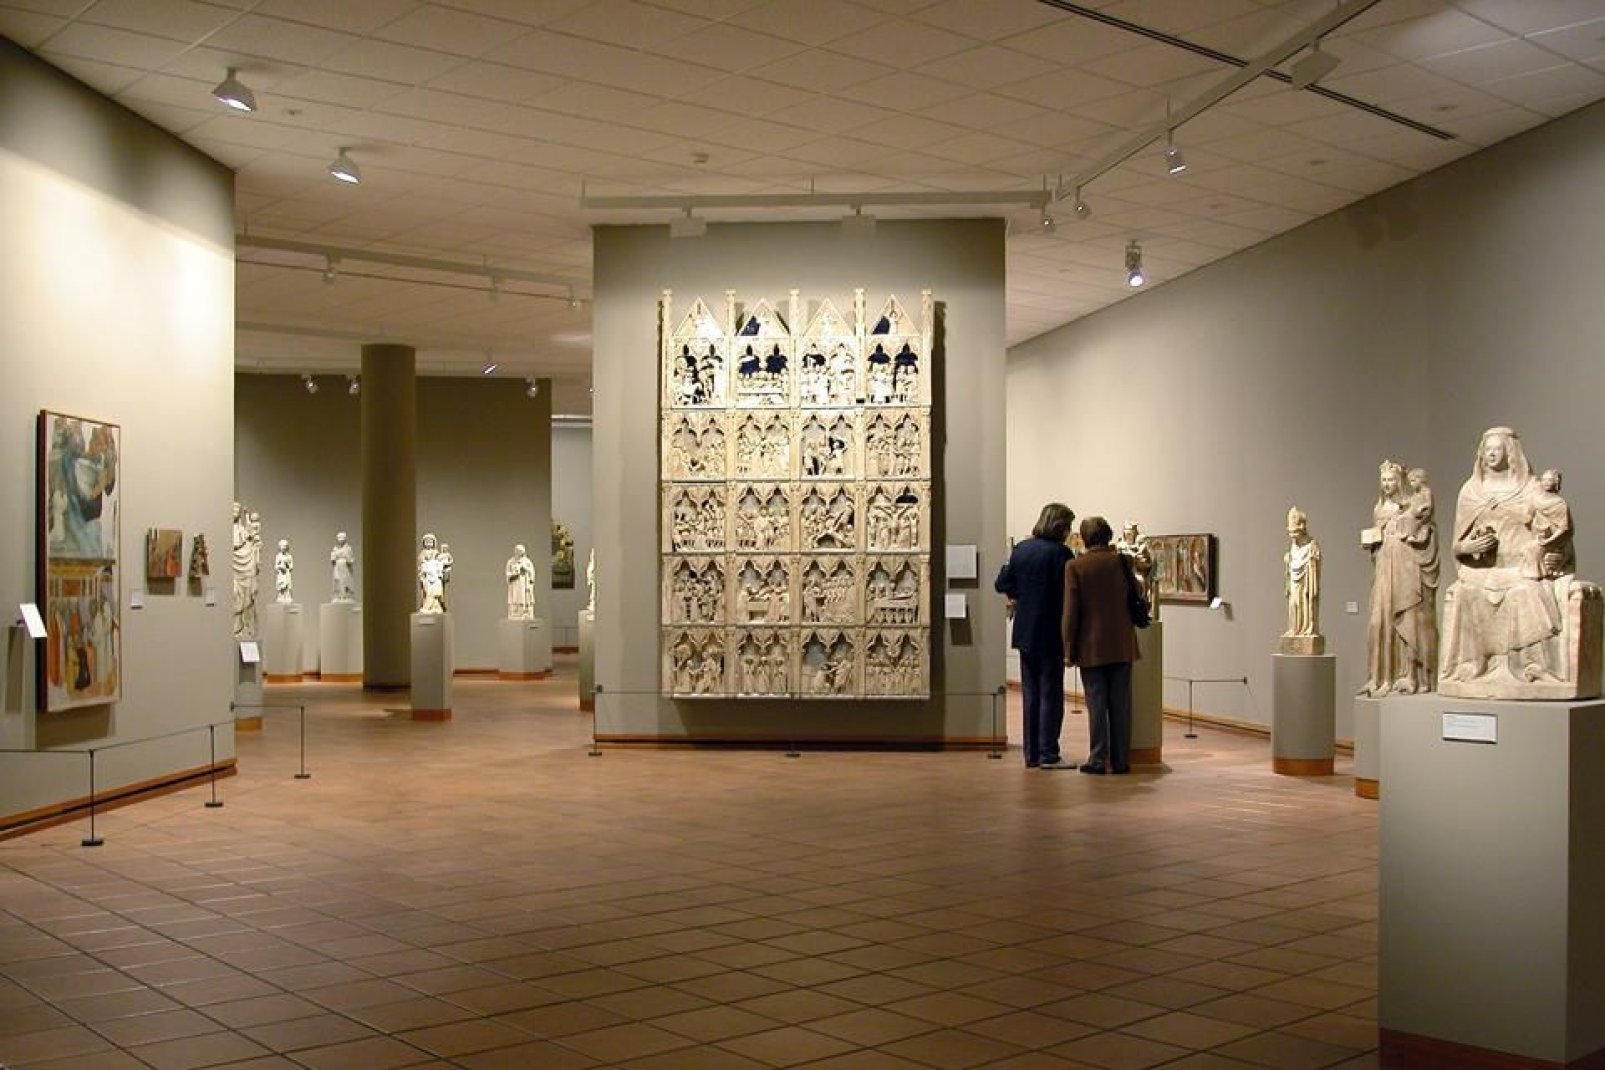 Ospita la seconda collezione più importante d'arte romanica catalana del paese.